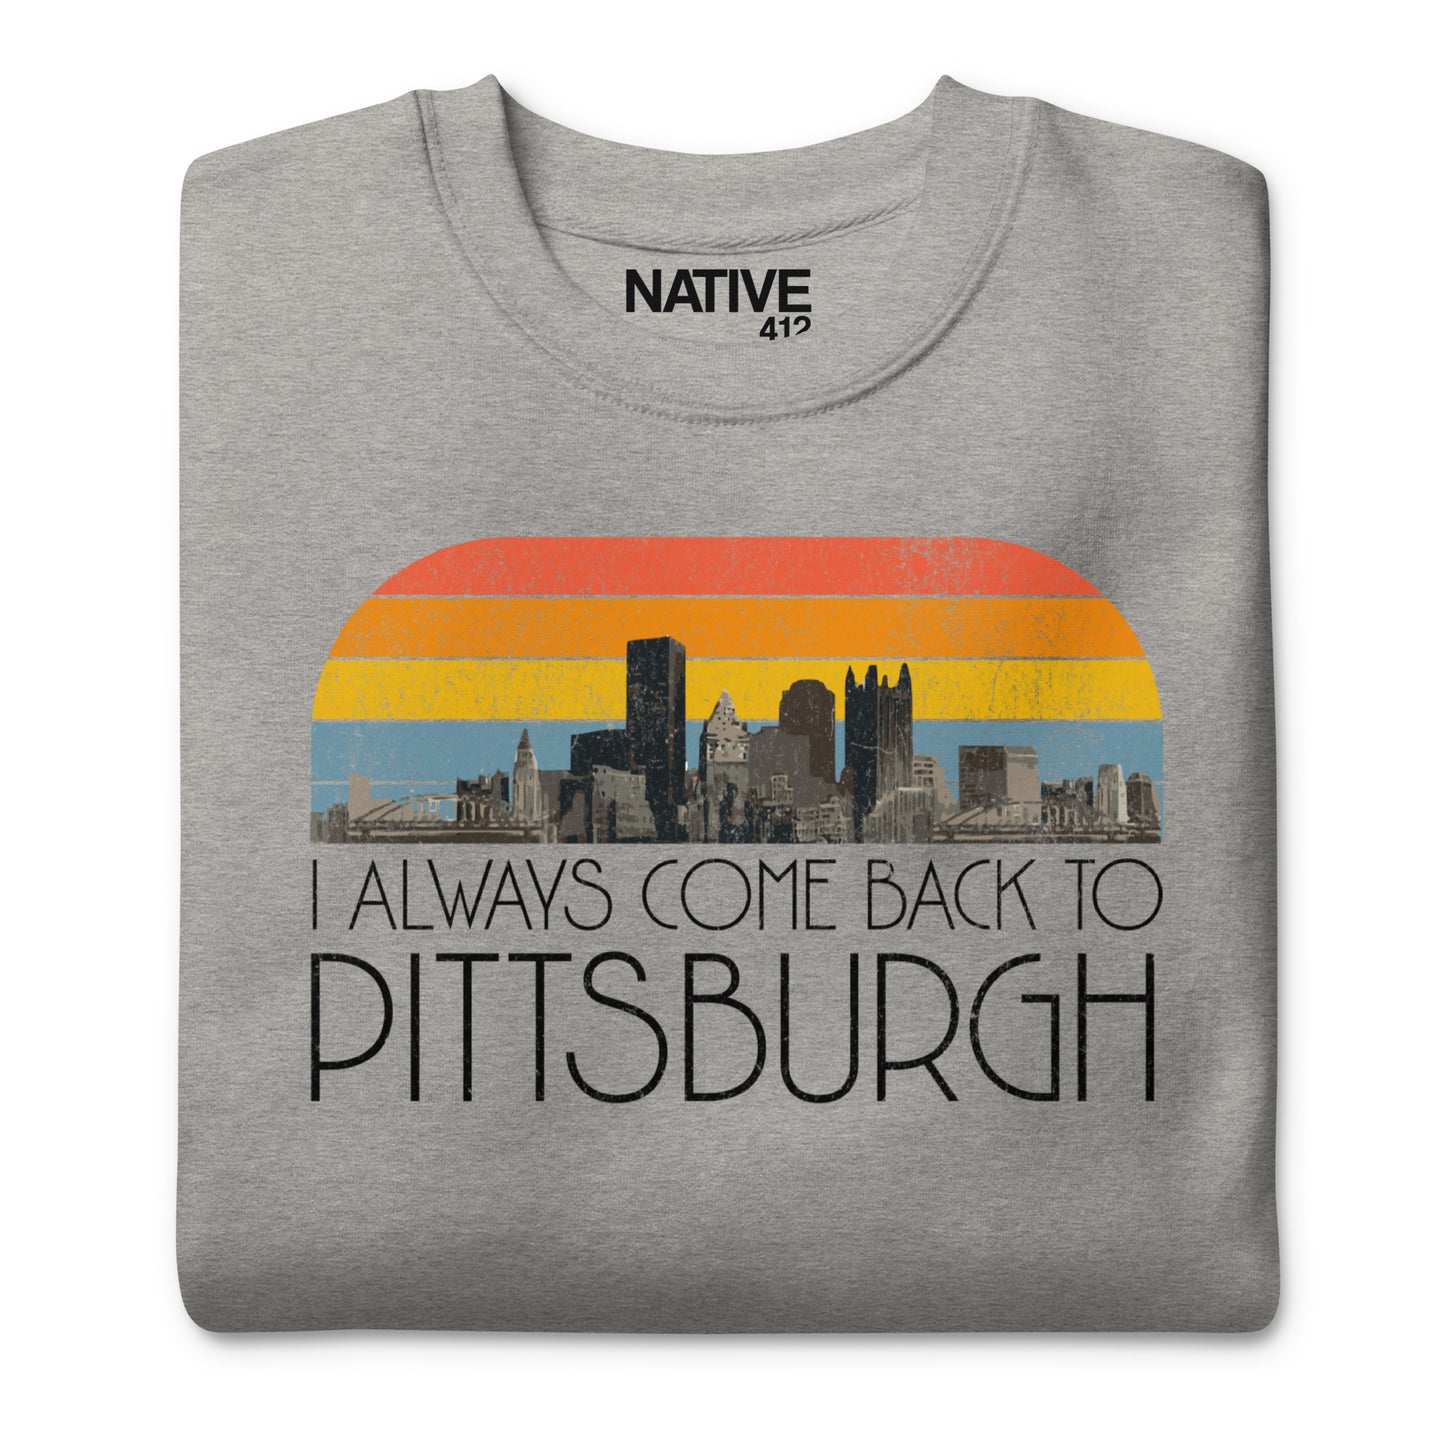 I Always Come Back To Pittsburgh Unisex Premium Sweatshirt